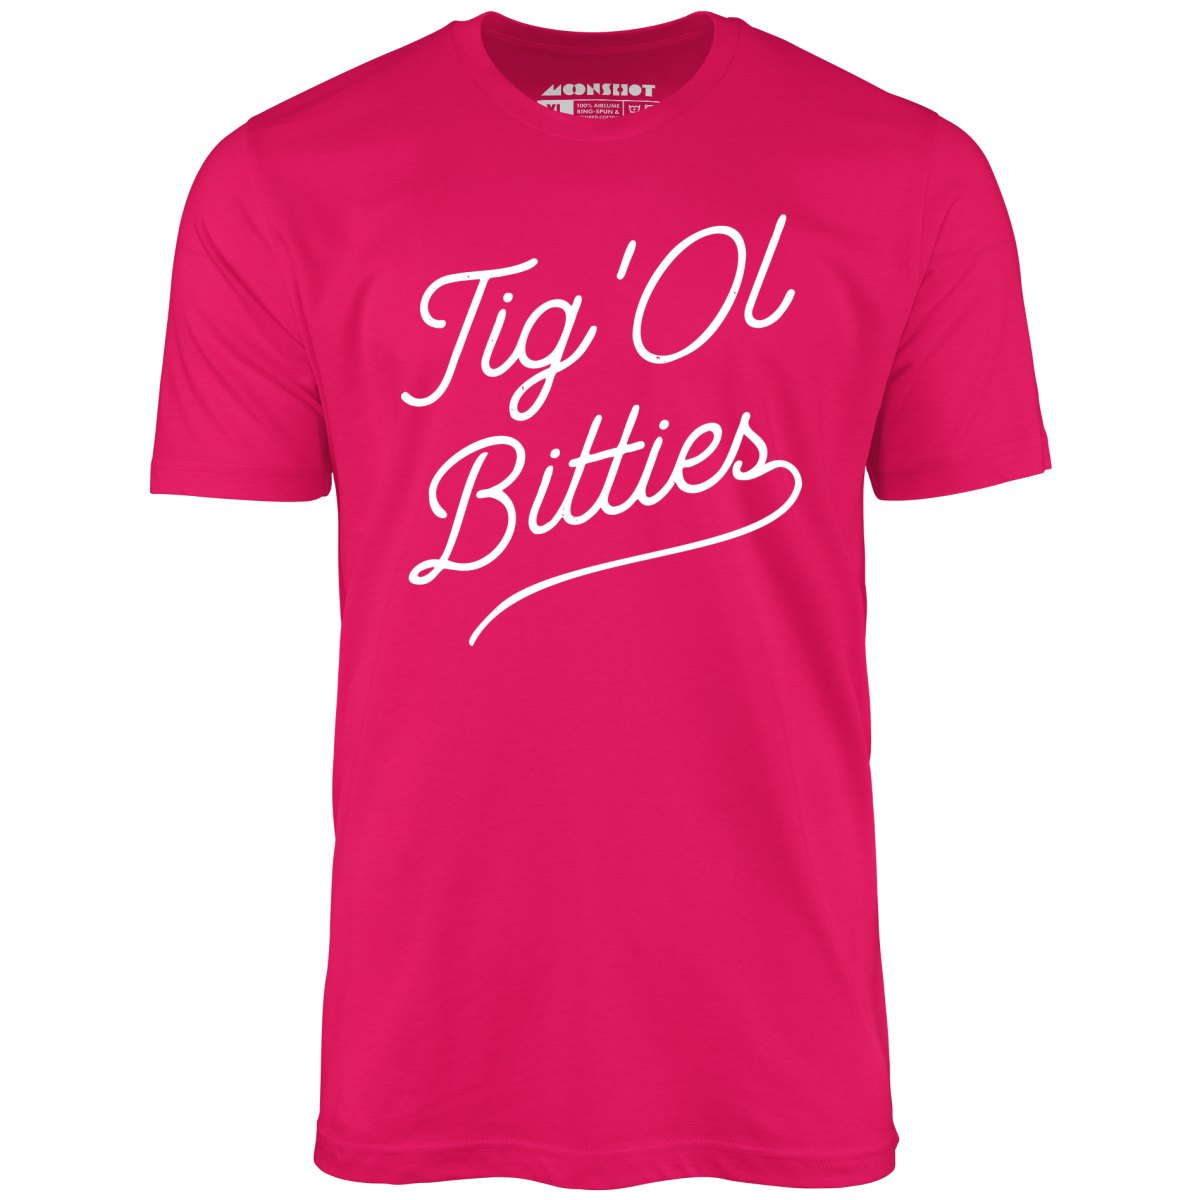 Tig 'Ol Bitties - Unisex T-Shirt